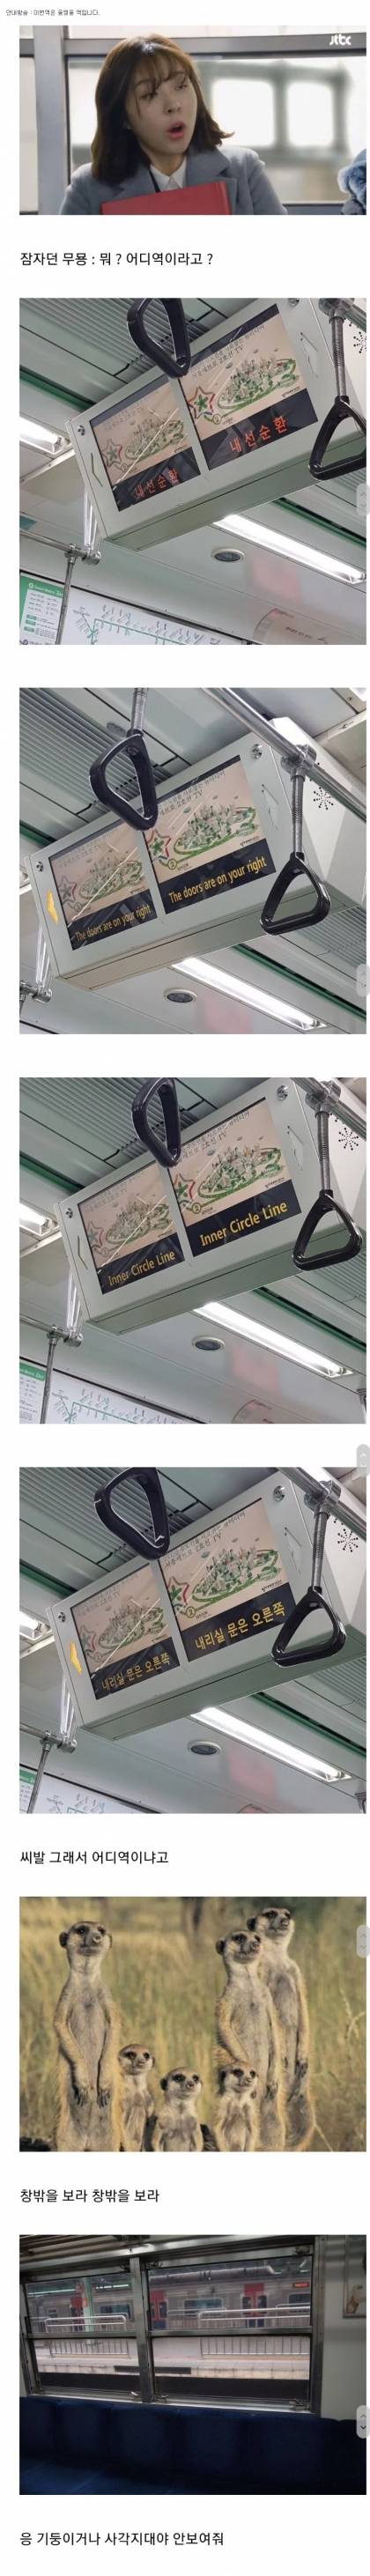 한국 지하철 유일한 단점